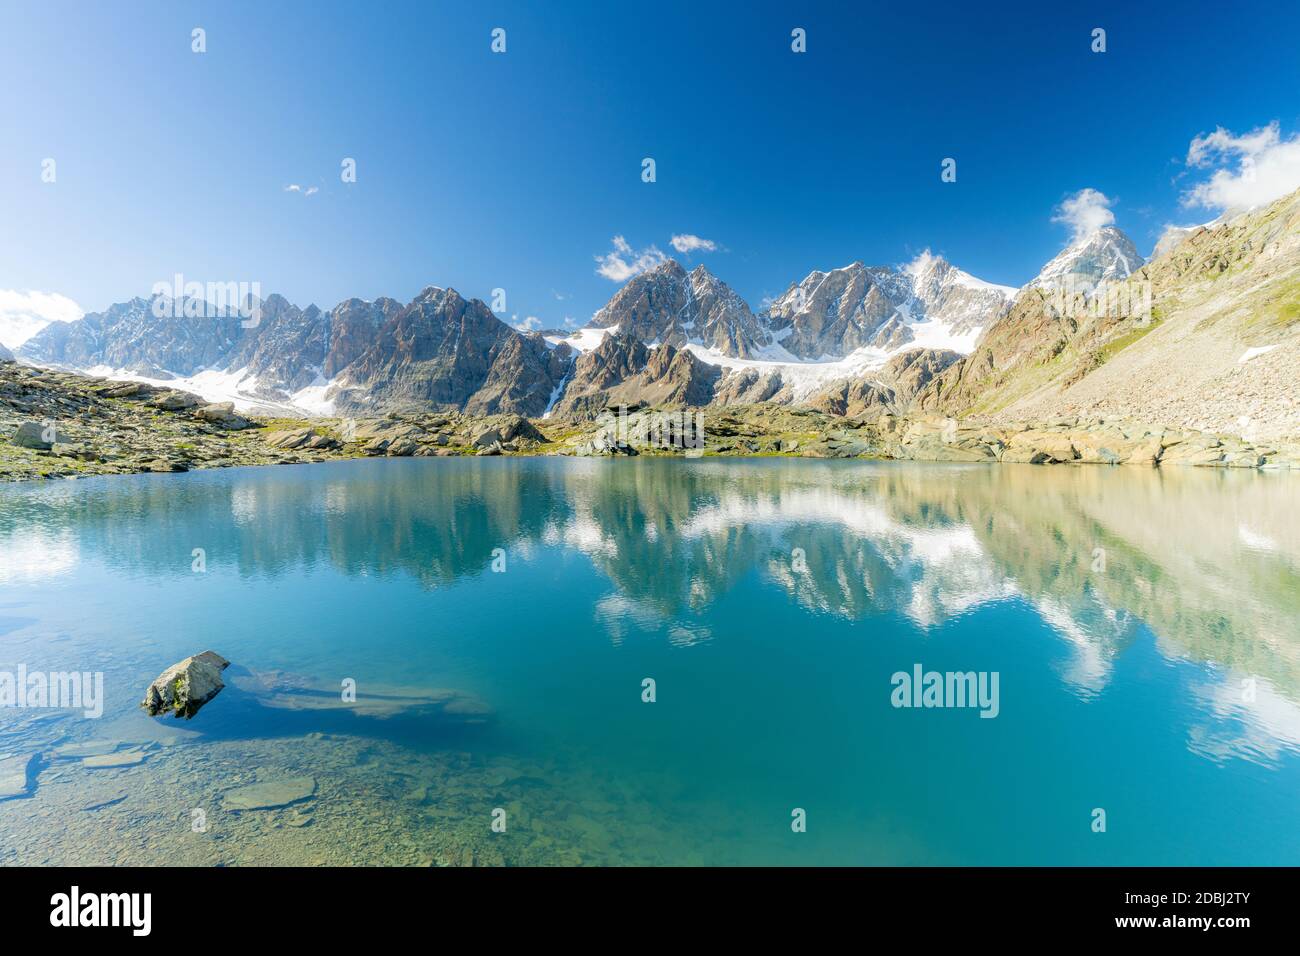 Die BERNINA Gruppe spiegelt sich im klaren Wasser des Forbici Sees, Valmalenco, Valtellina, Sondrio Provinz, Lombardei, Italien, Europa Stockfoto